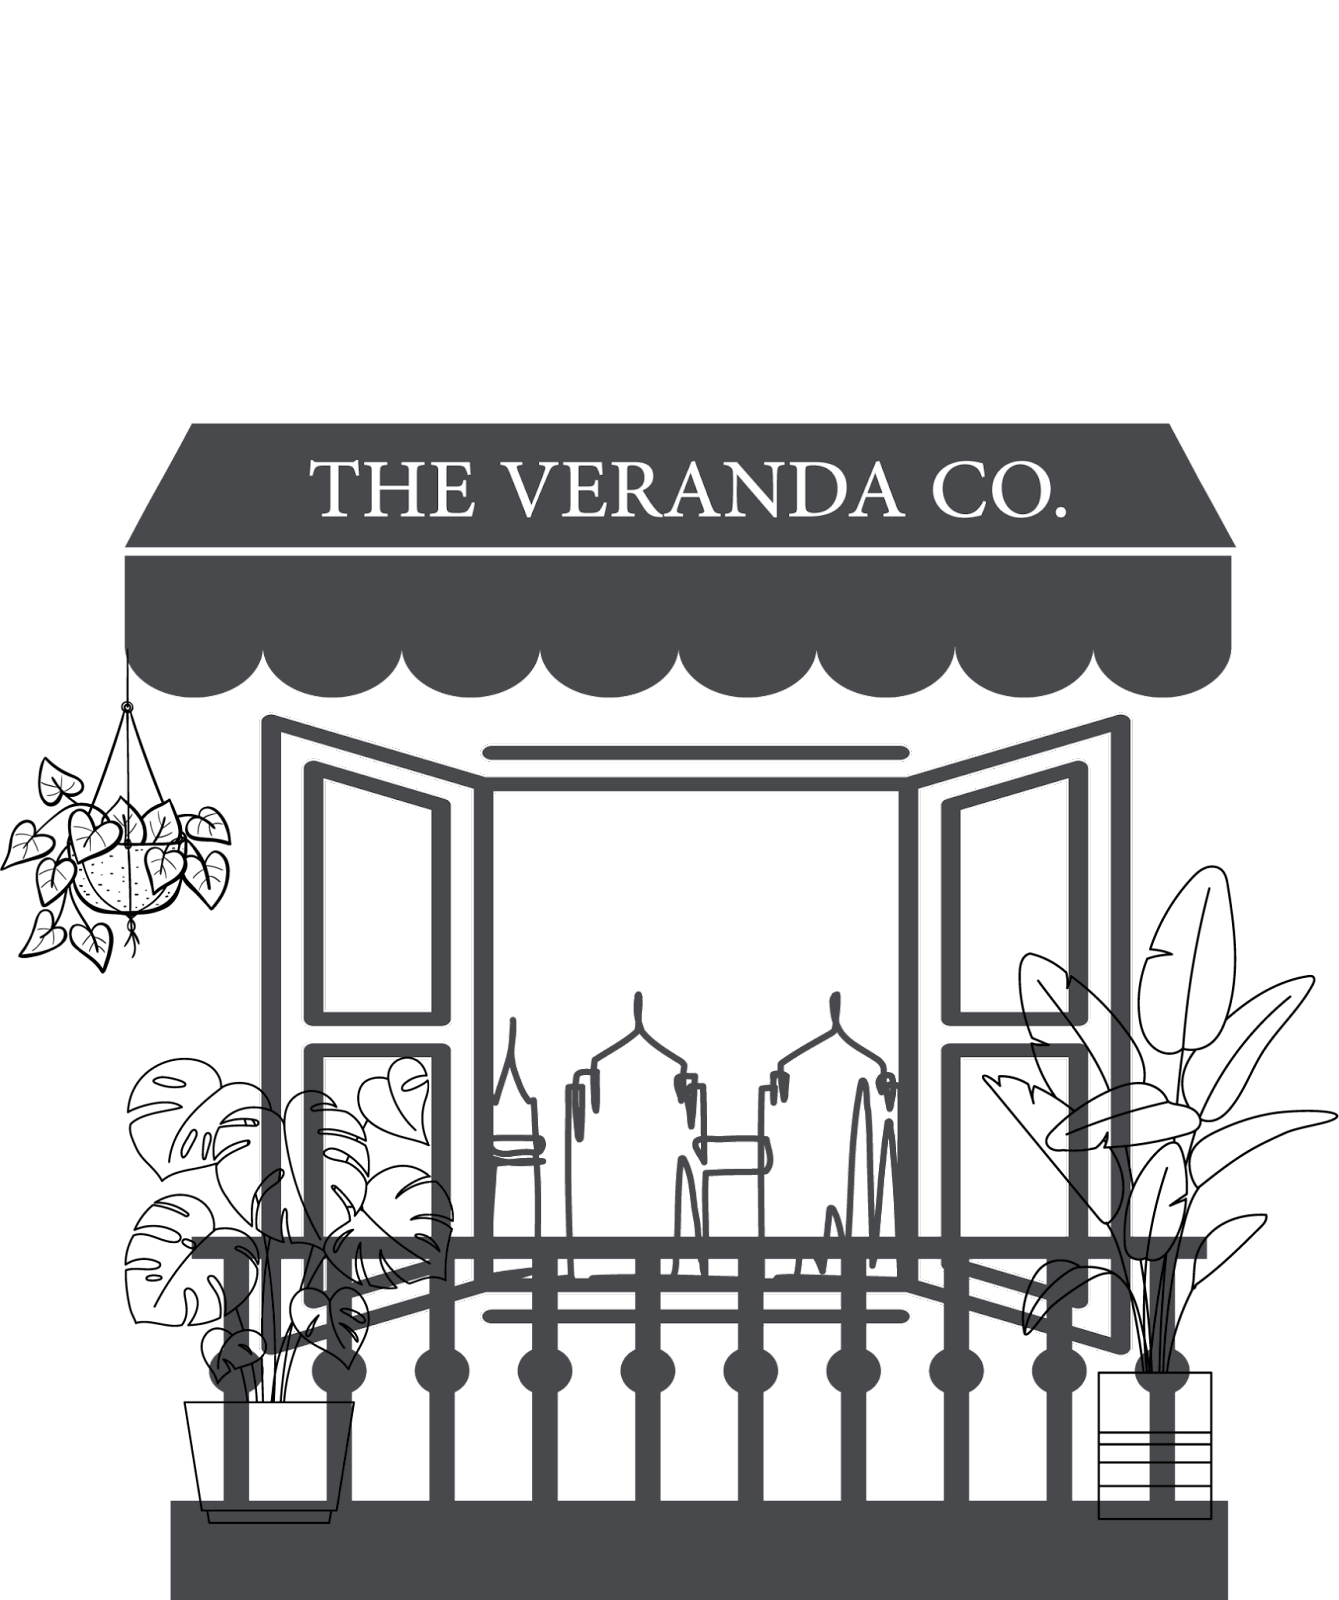 THE VERANDA CO.